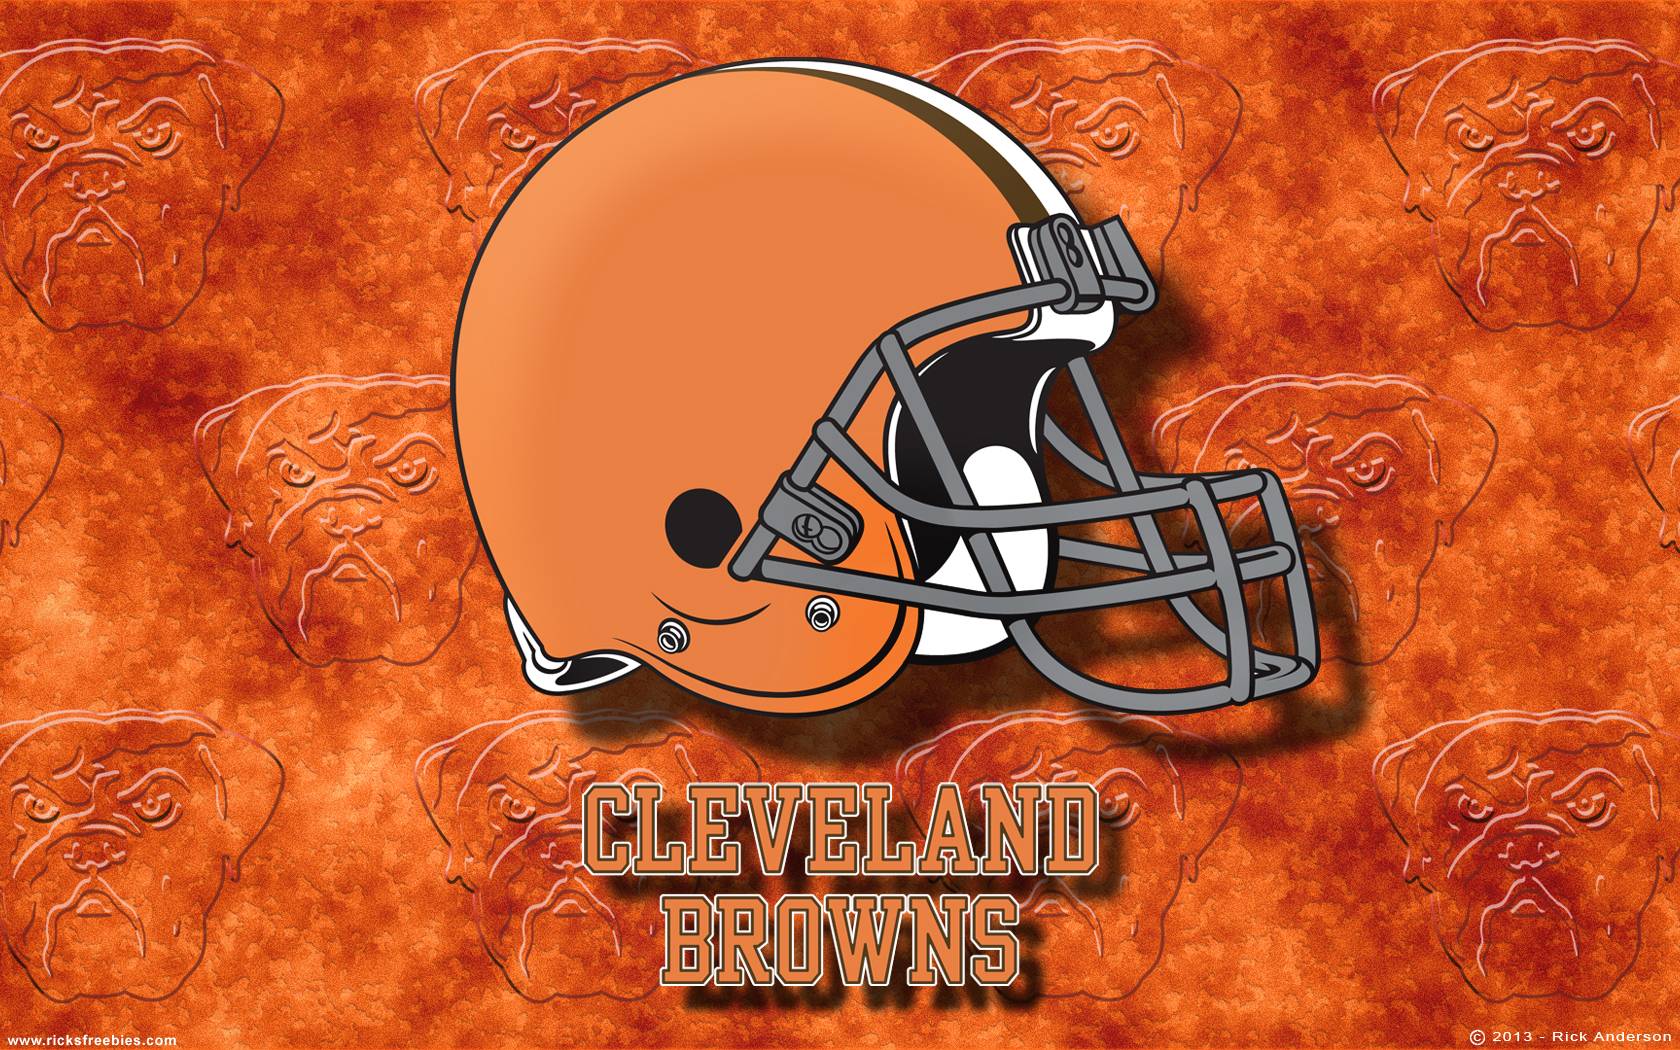 Cleveland Browns Wallpaper 2014. Sky HD Wallpaper